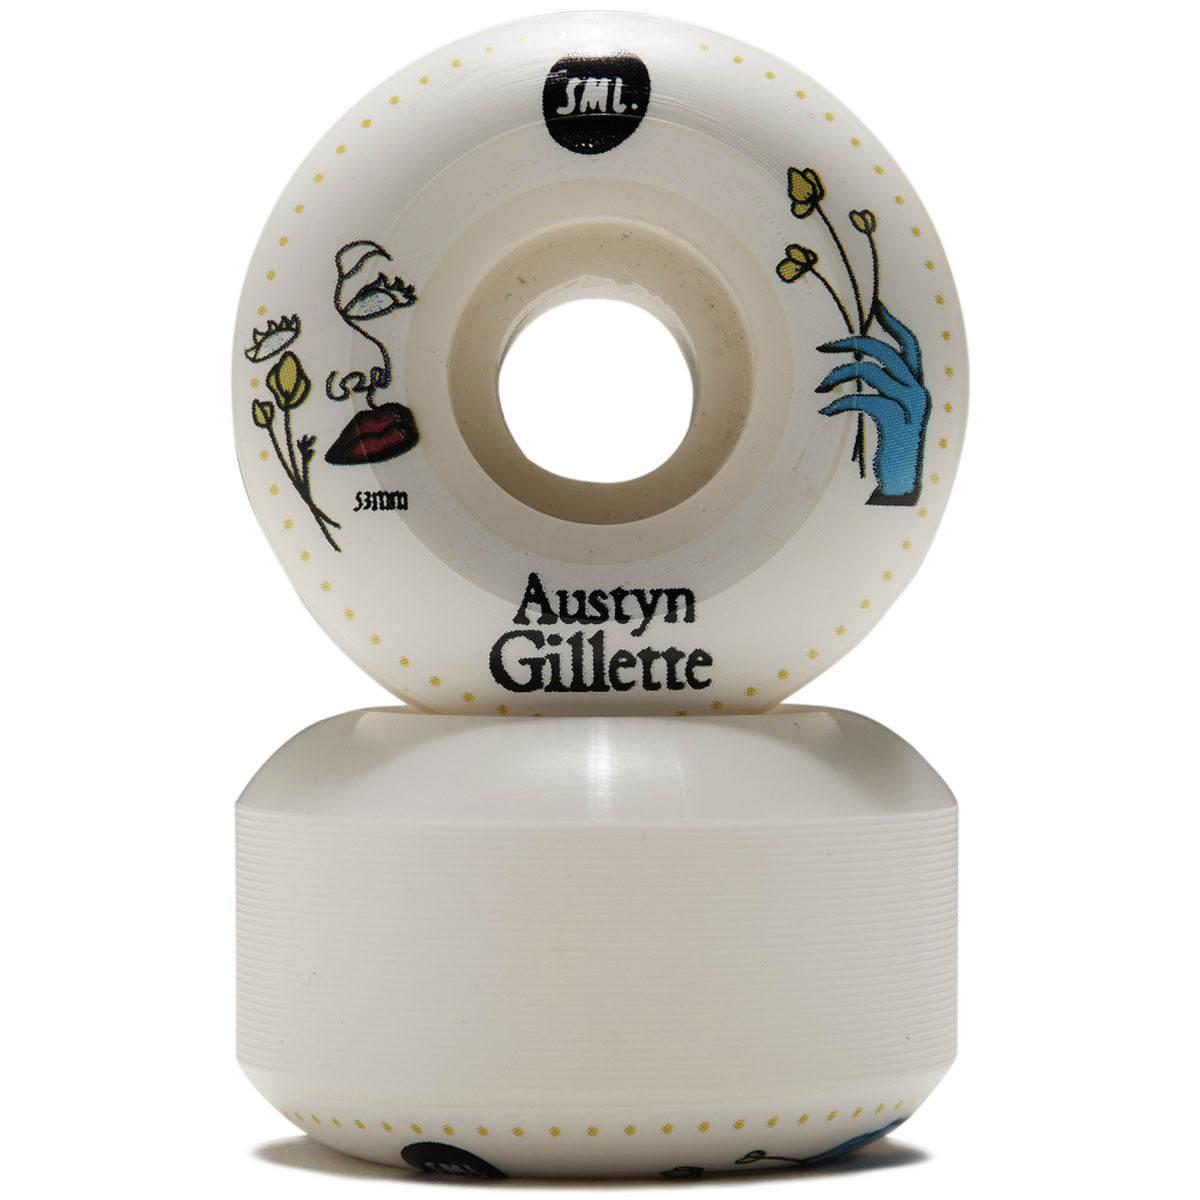 SML Lucidity Austyn Gillette Skateboard Wheels - 53mm image 2